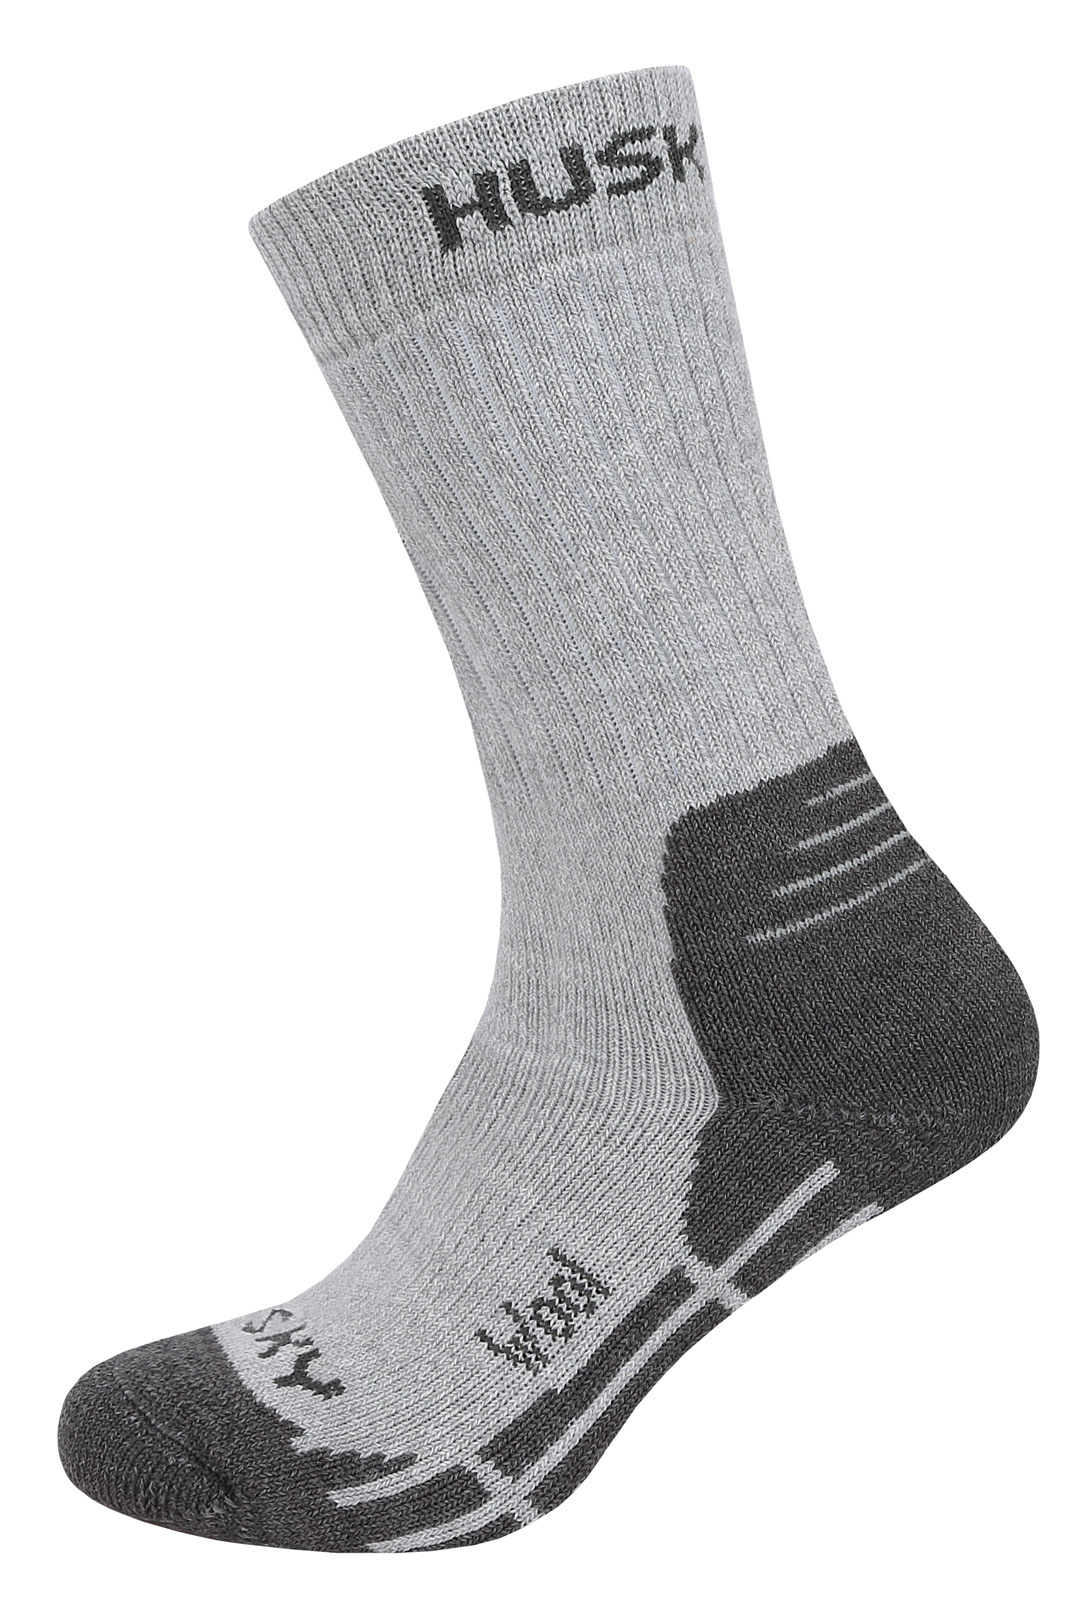 Husky Dětské ponožky All Wool sv. šedá Velikost: 30-32 ponožky